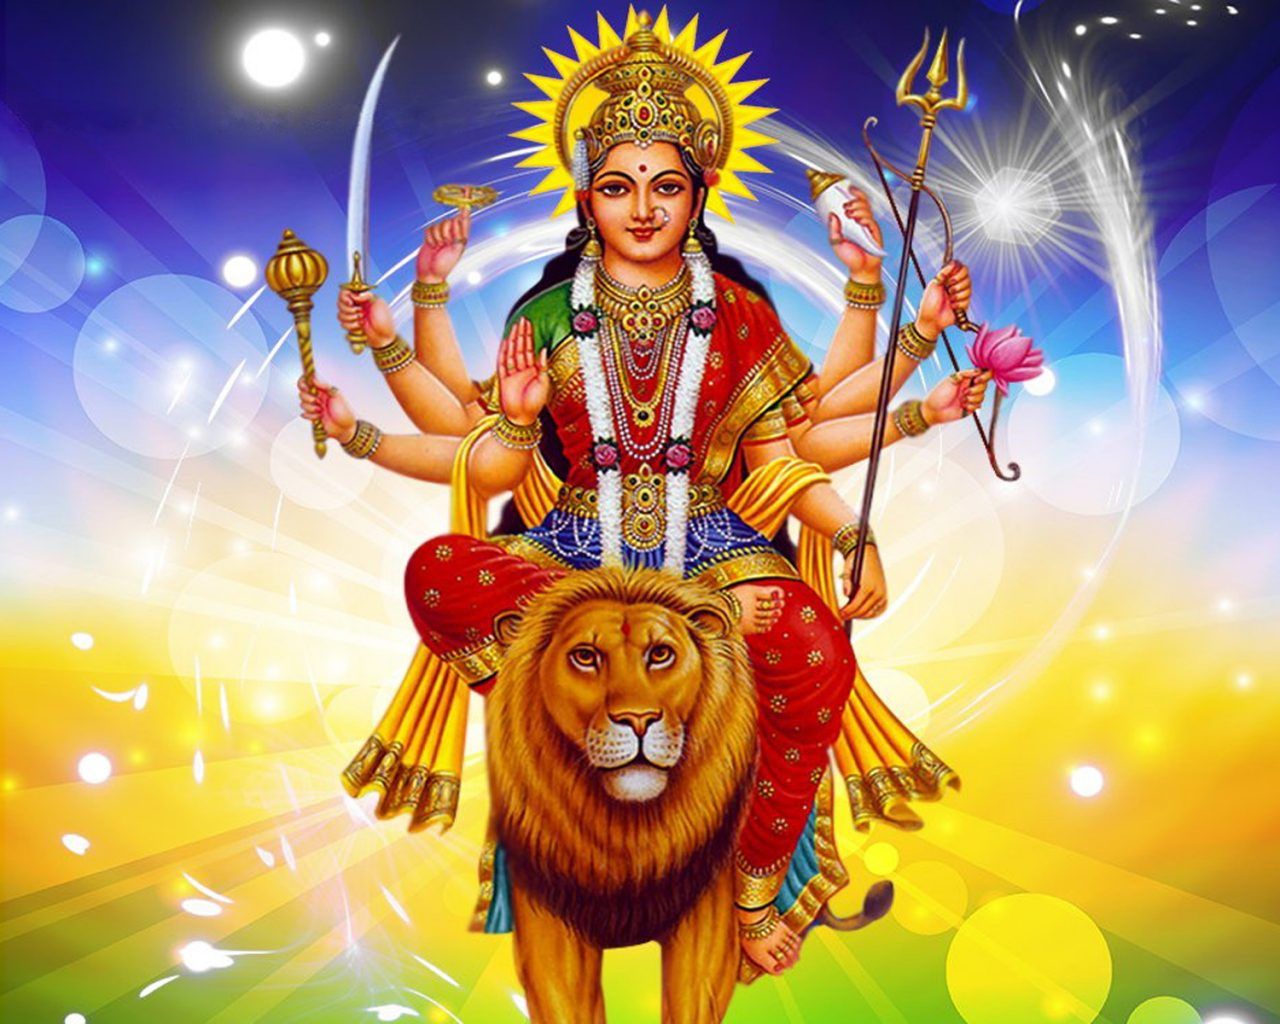 Happy Navratri Maa Durga Image For HD Wallpaper 1920x1200, Wallpaper13.com